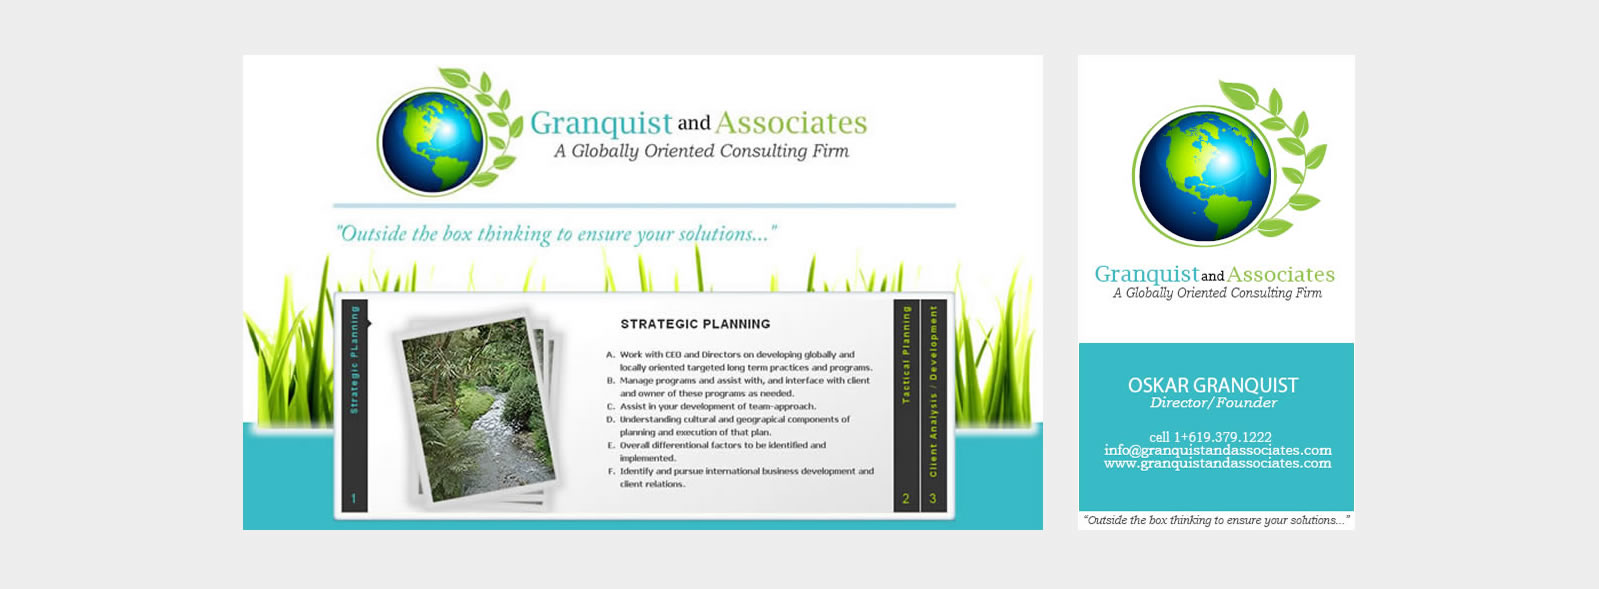 Granquist & Associates